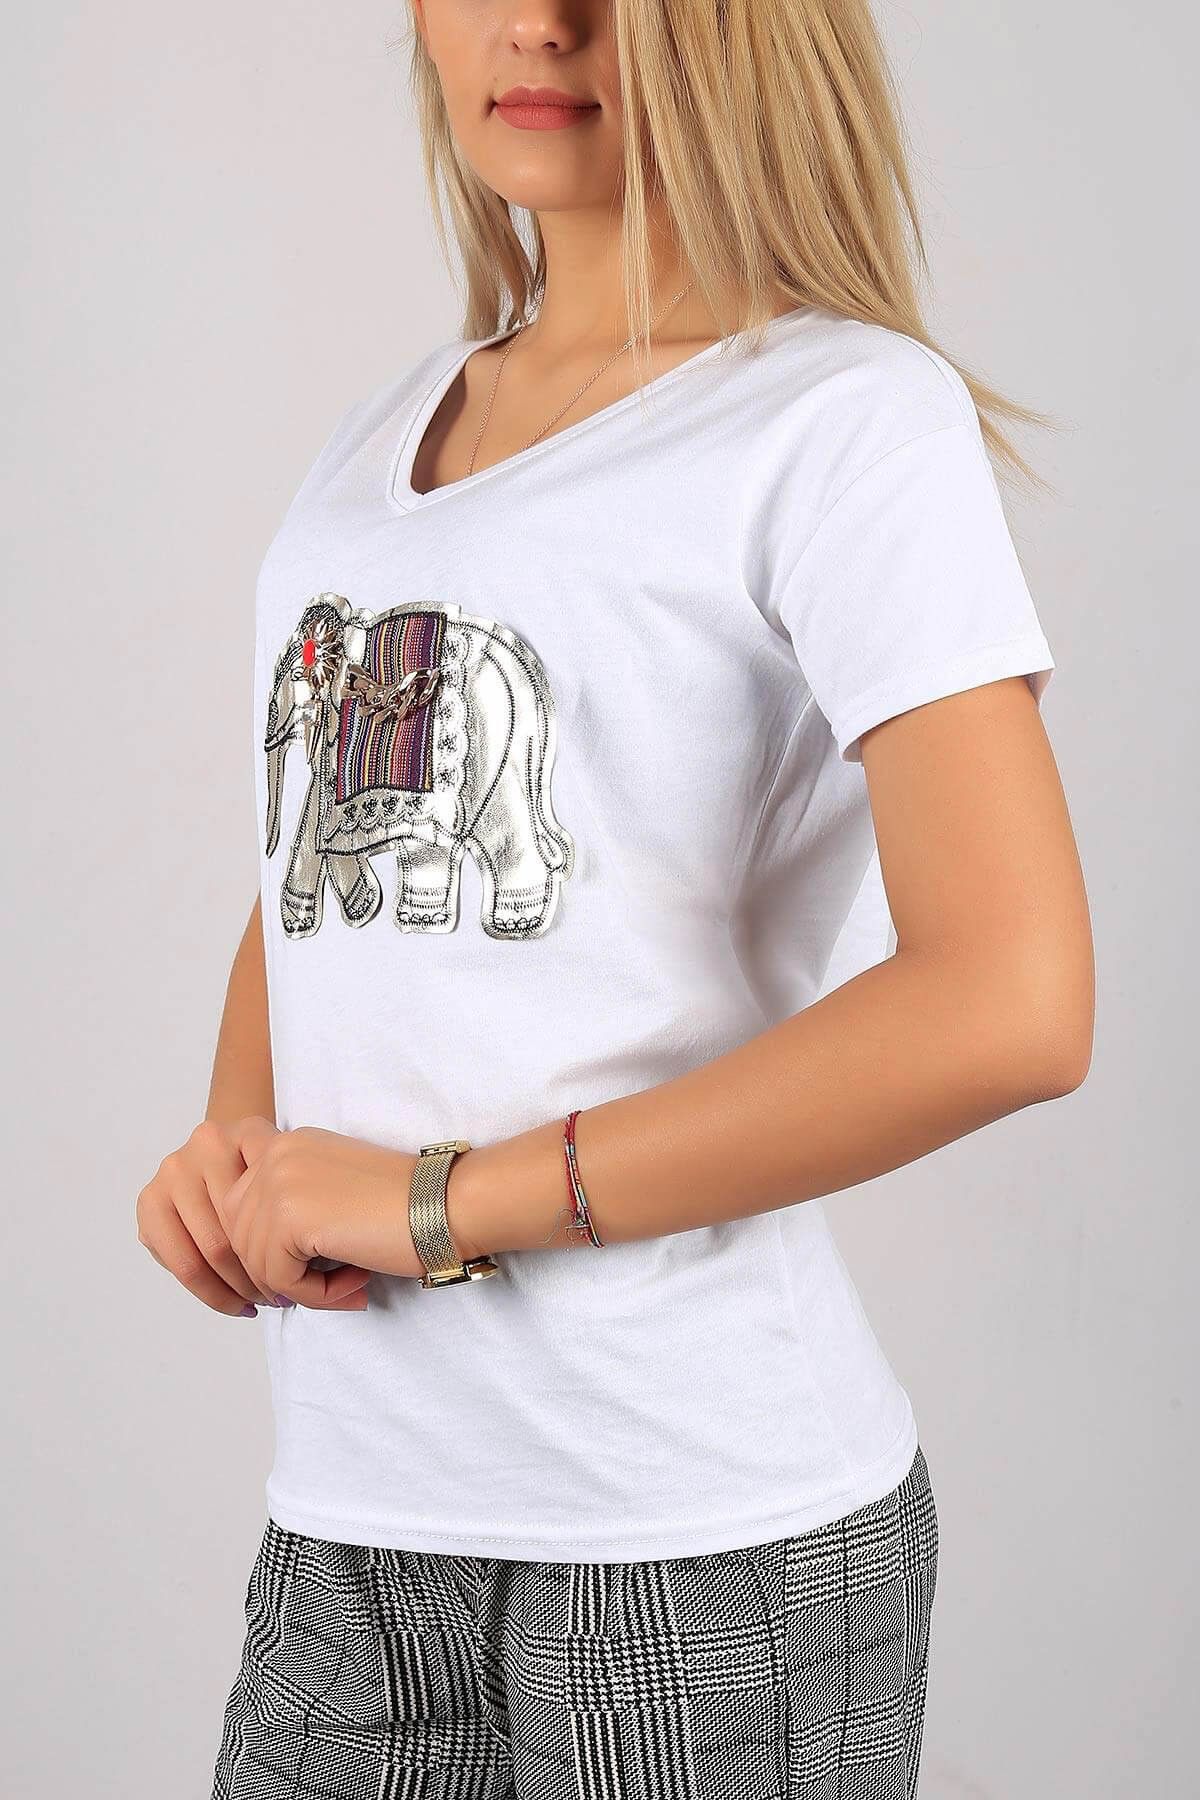 modamızbir Kadın Beyaz Fil Detaylı V Yaka T-shirt 301-6233BG